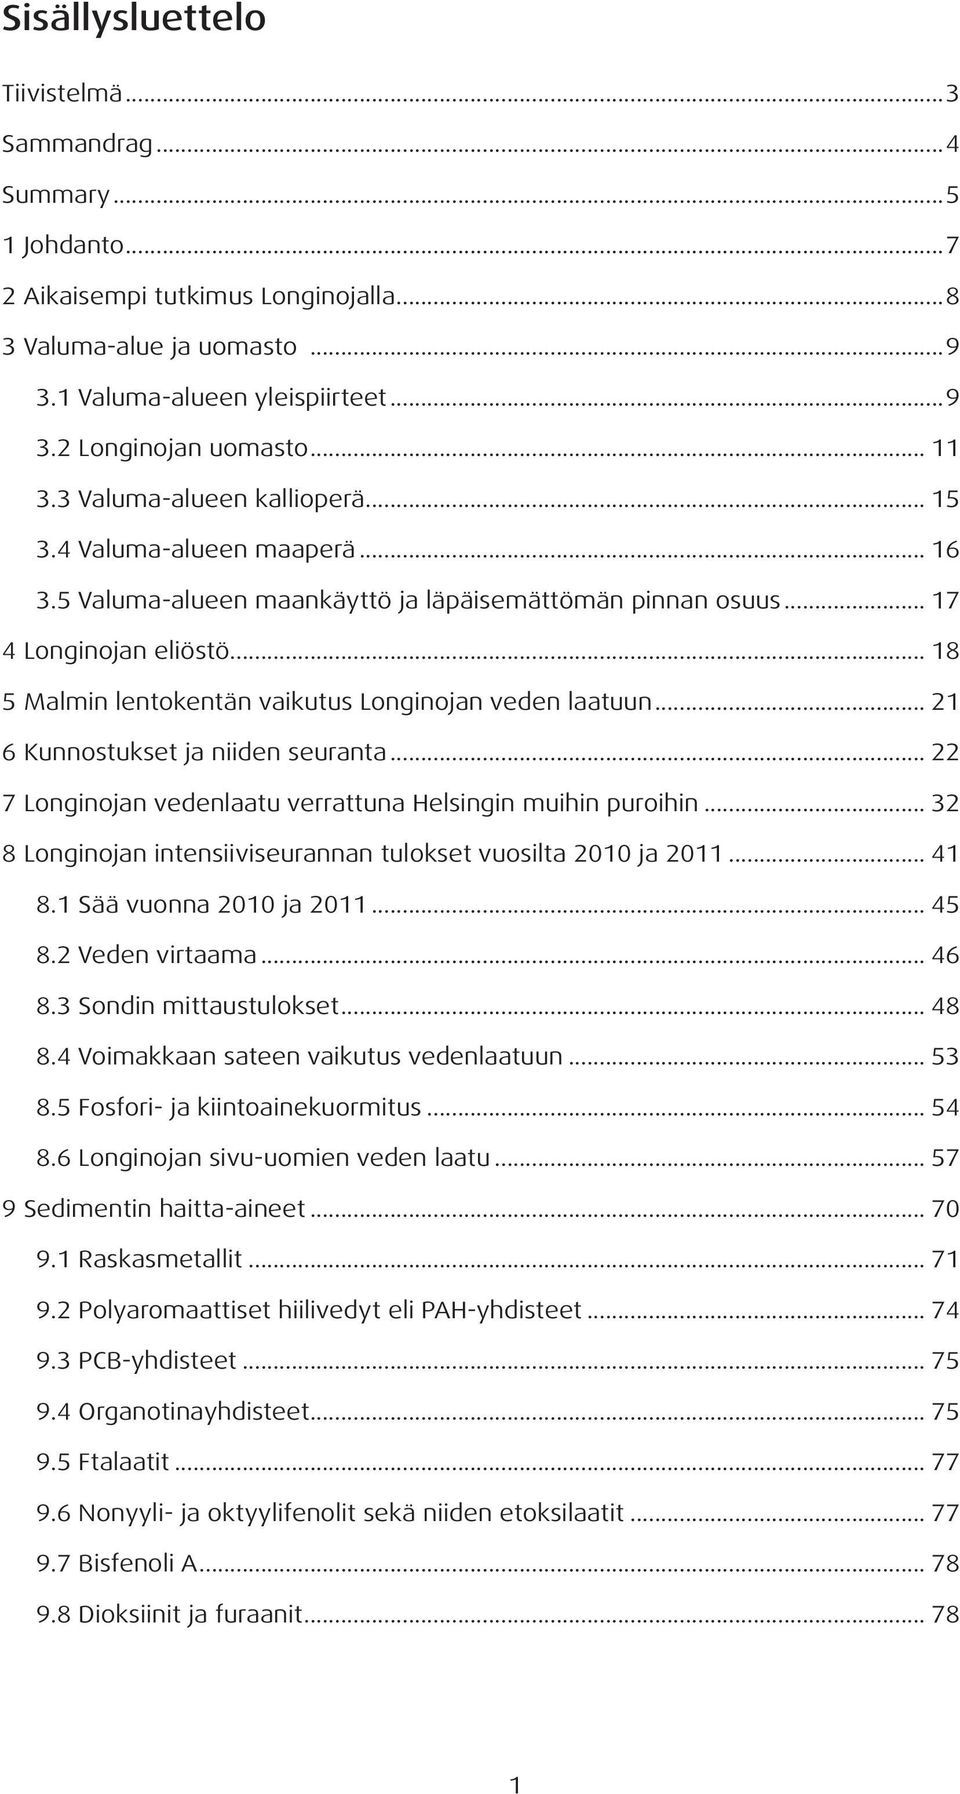 .. 18 5 Malmin lentokentän vaikutus Longinojan veden laatuun... 21 6 Kunnostukset ja niiden seuranta... 22 7 Longinojan vedenlaatu verrattuna Helsingin muihin puroihin.